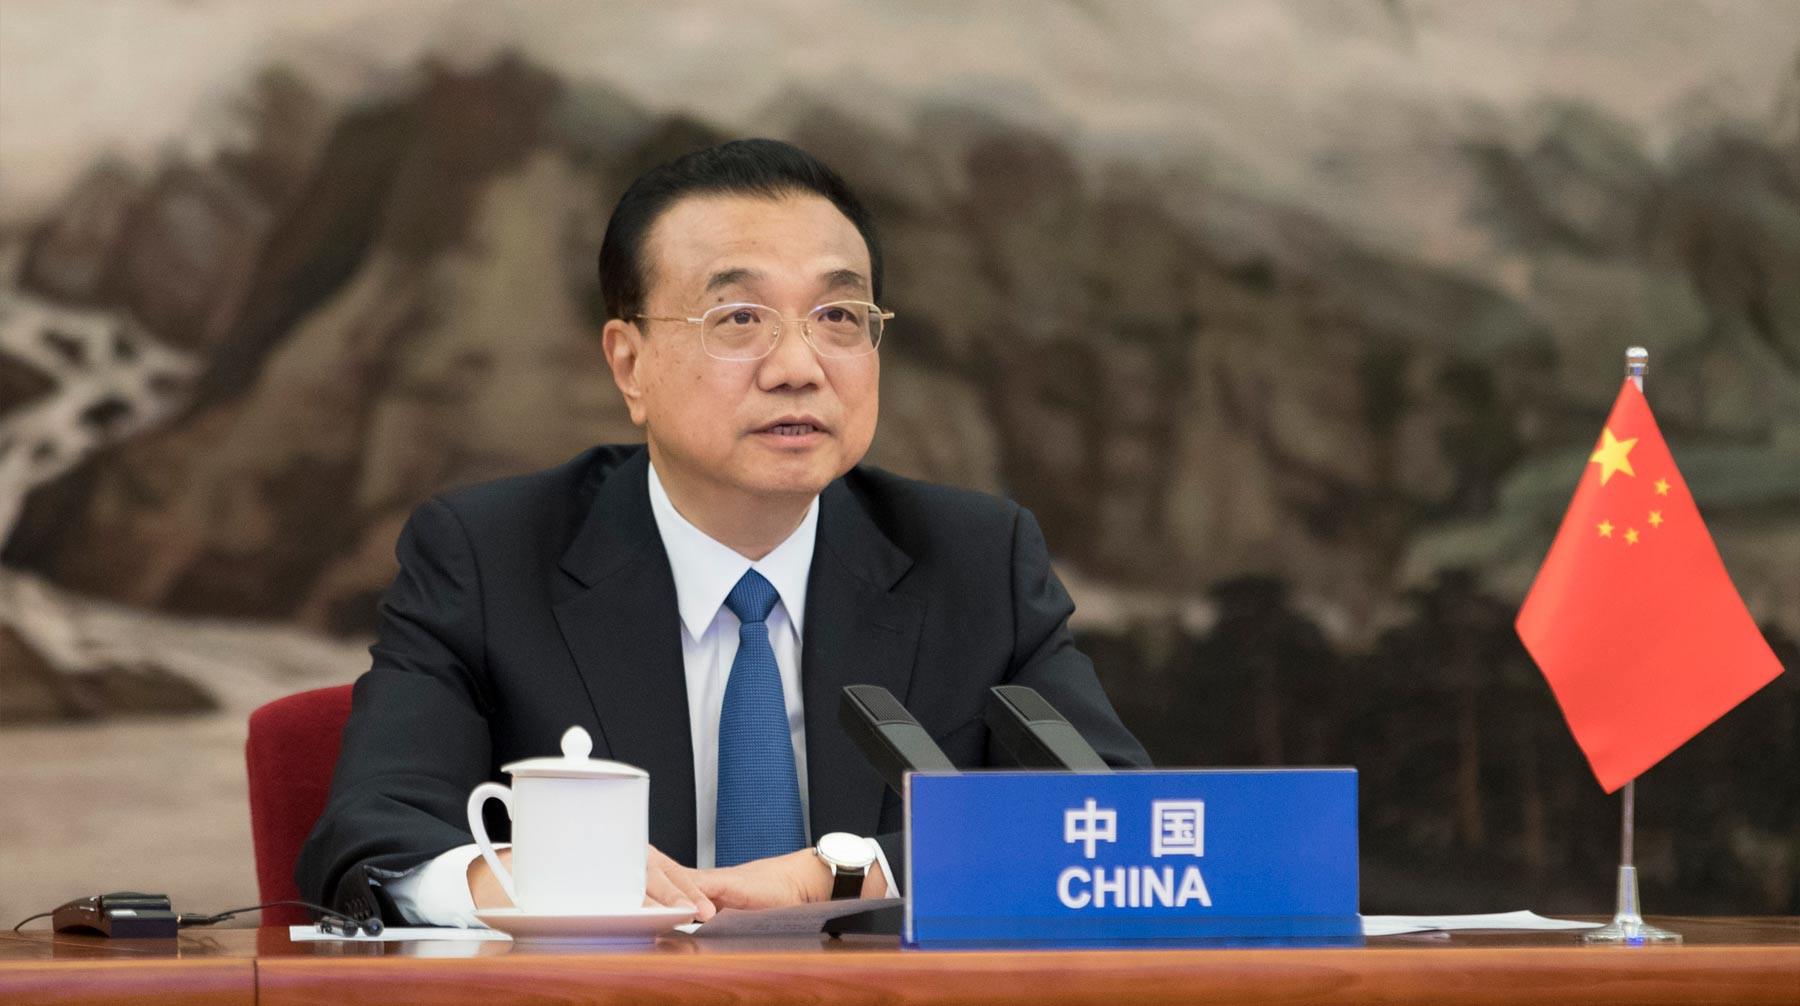 Dailystorm - Китай согласился на проведение независимого расследования источников COVID-19